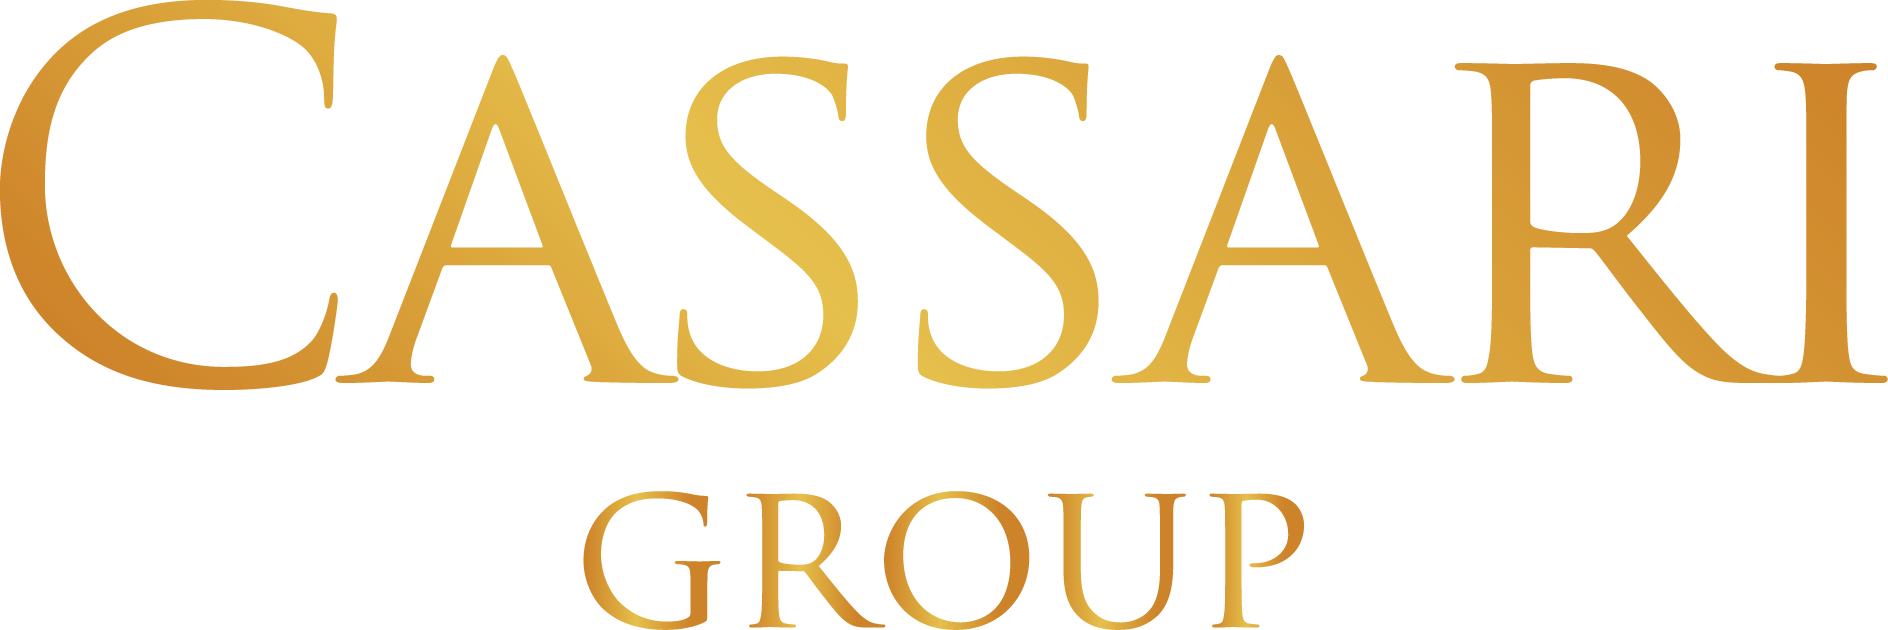 Cassari Group